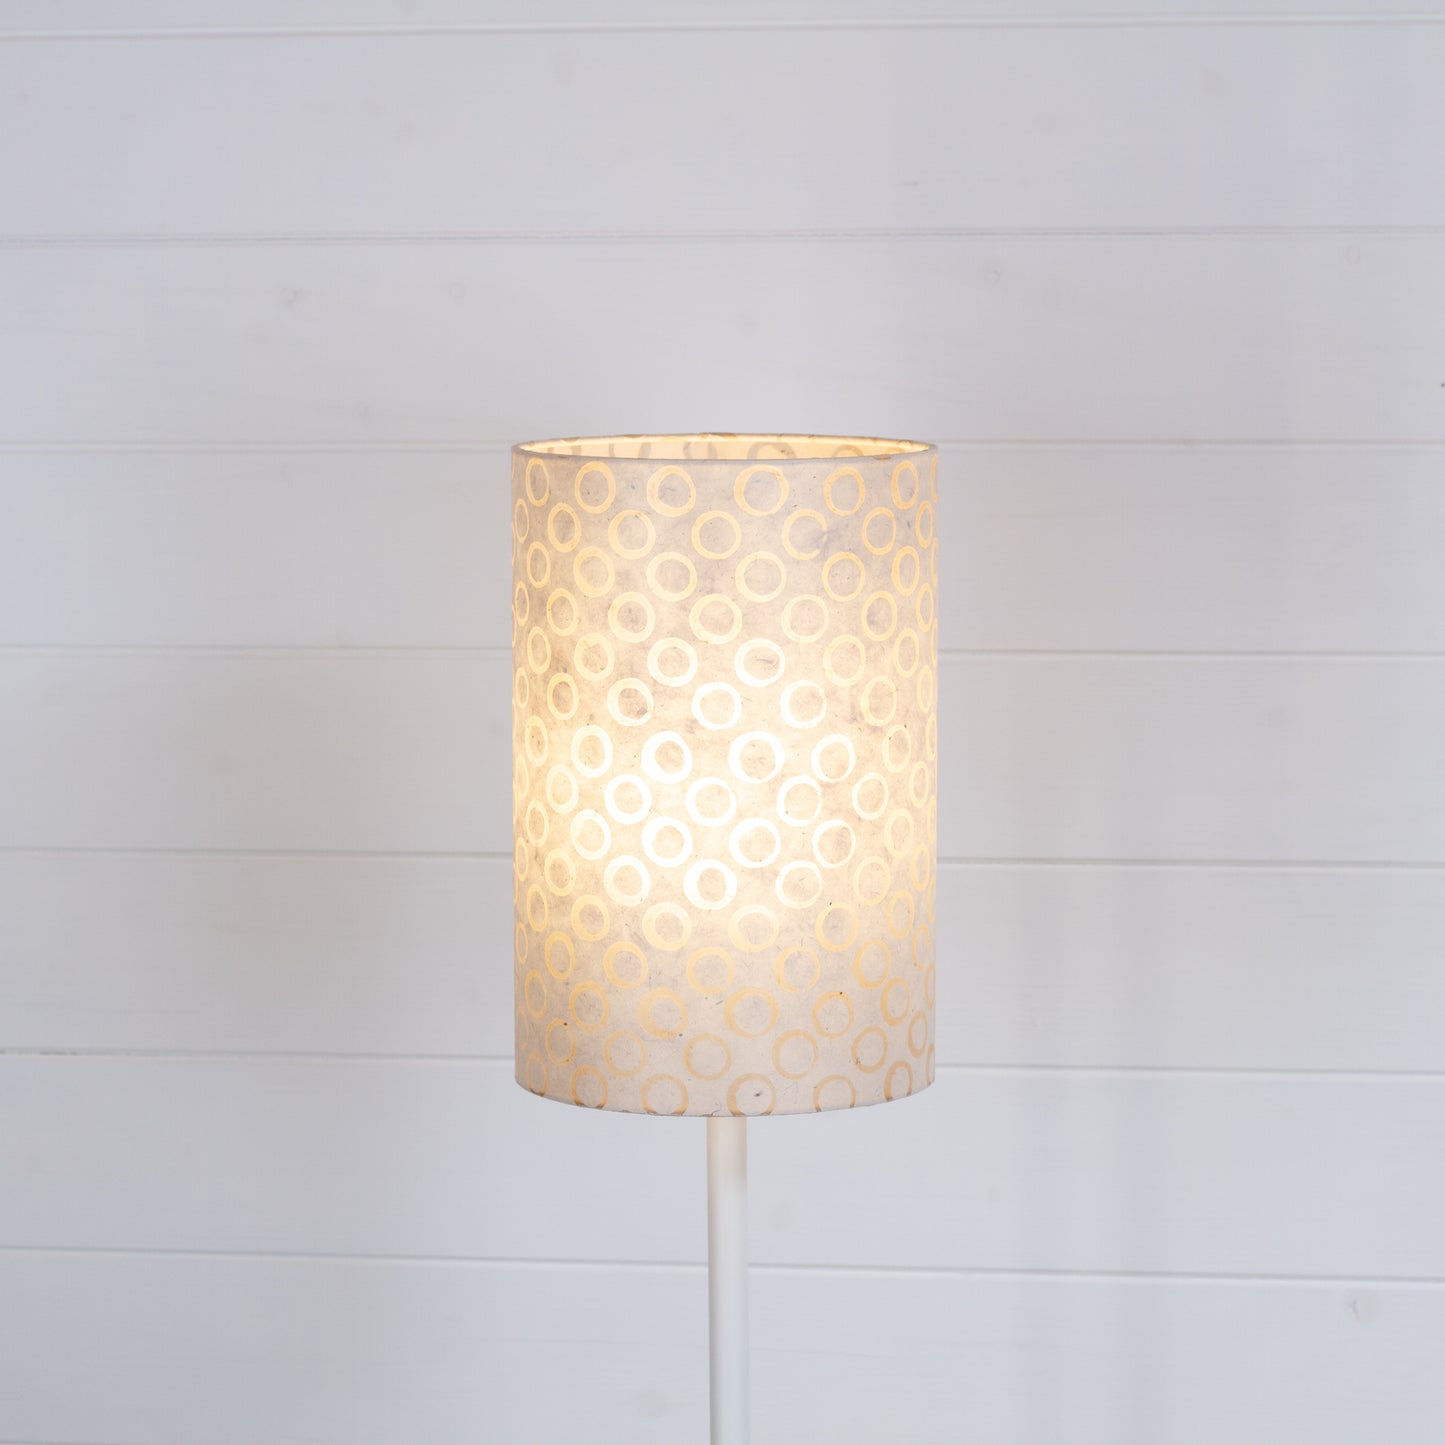 Drum Lamp Shade - P74 - Batik Natural Circles, 20cm(d) x 30cm(h)